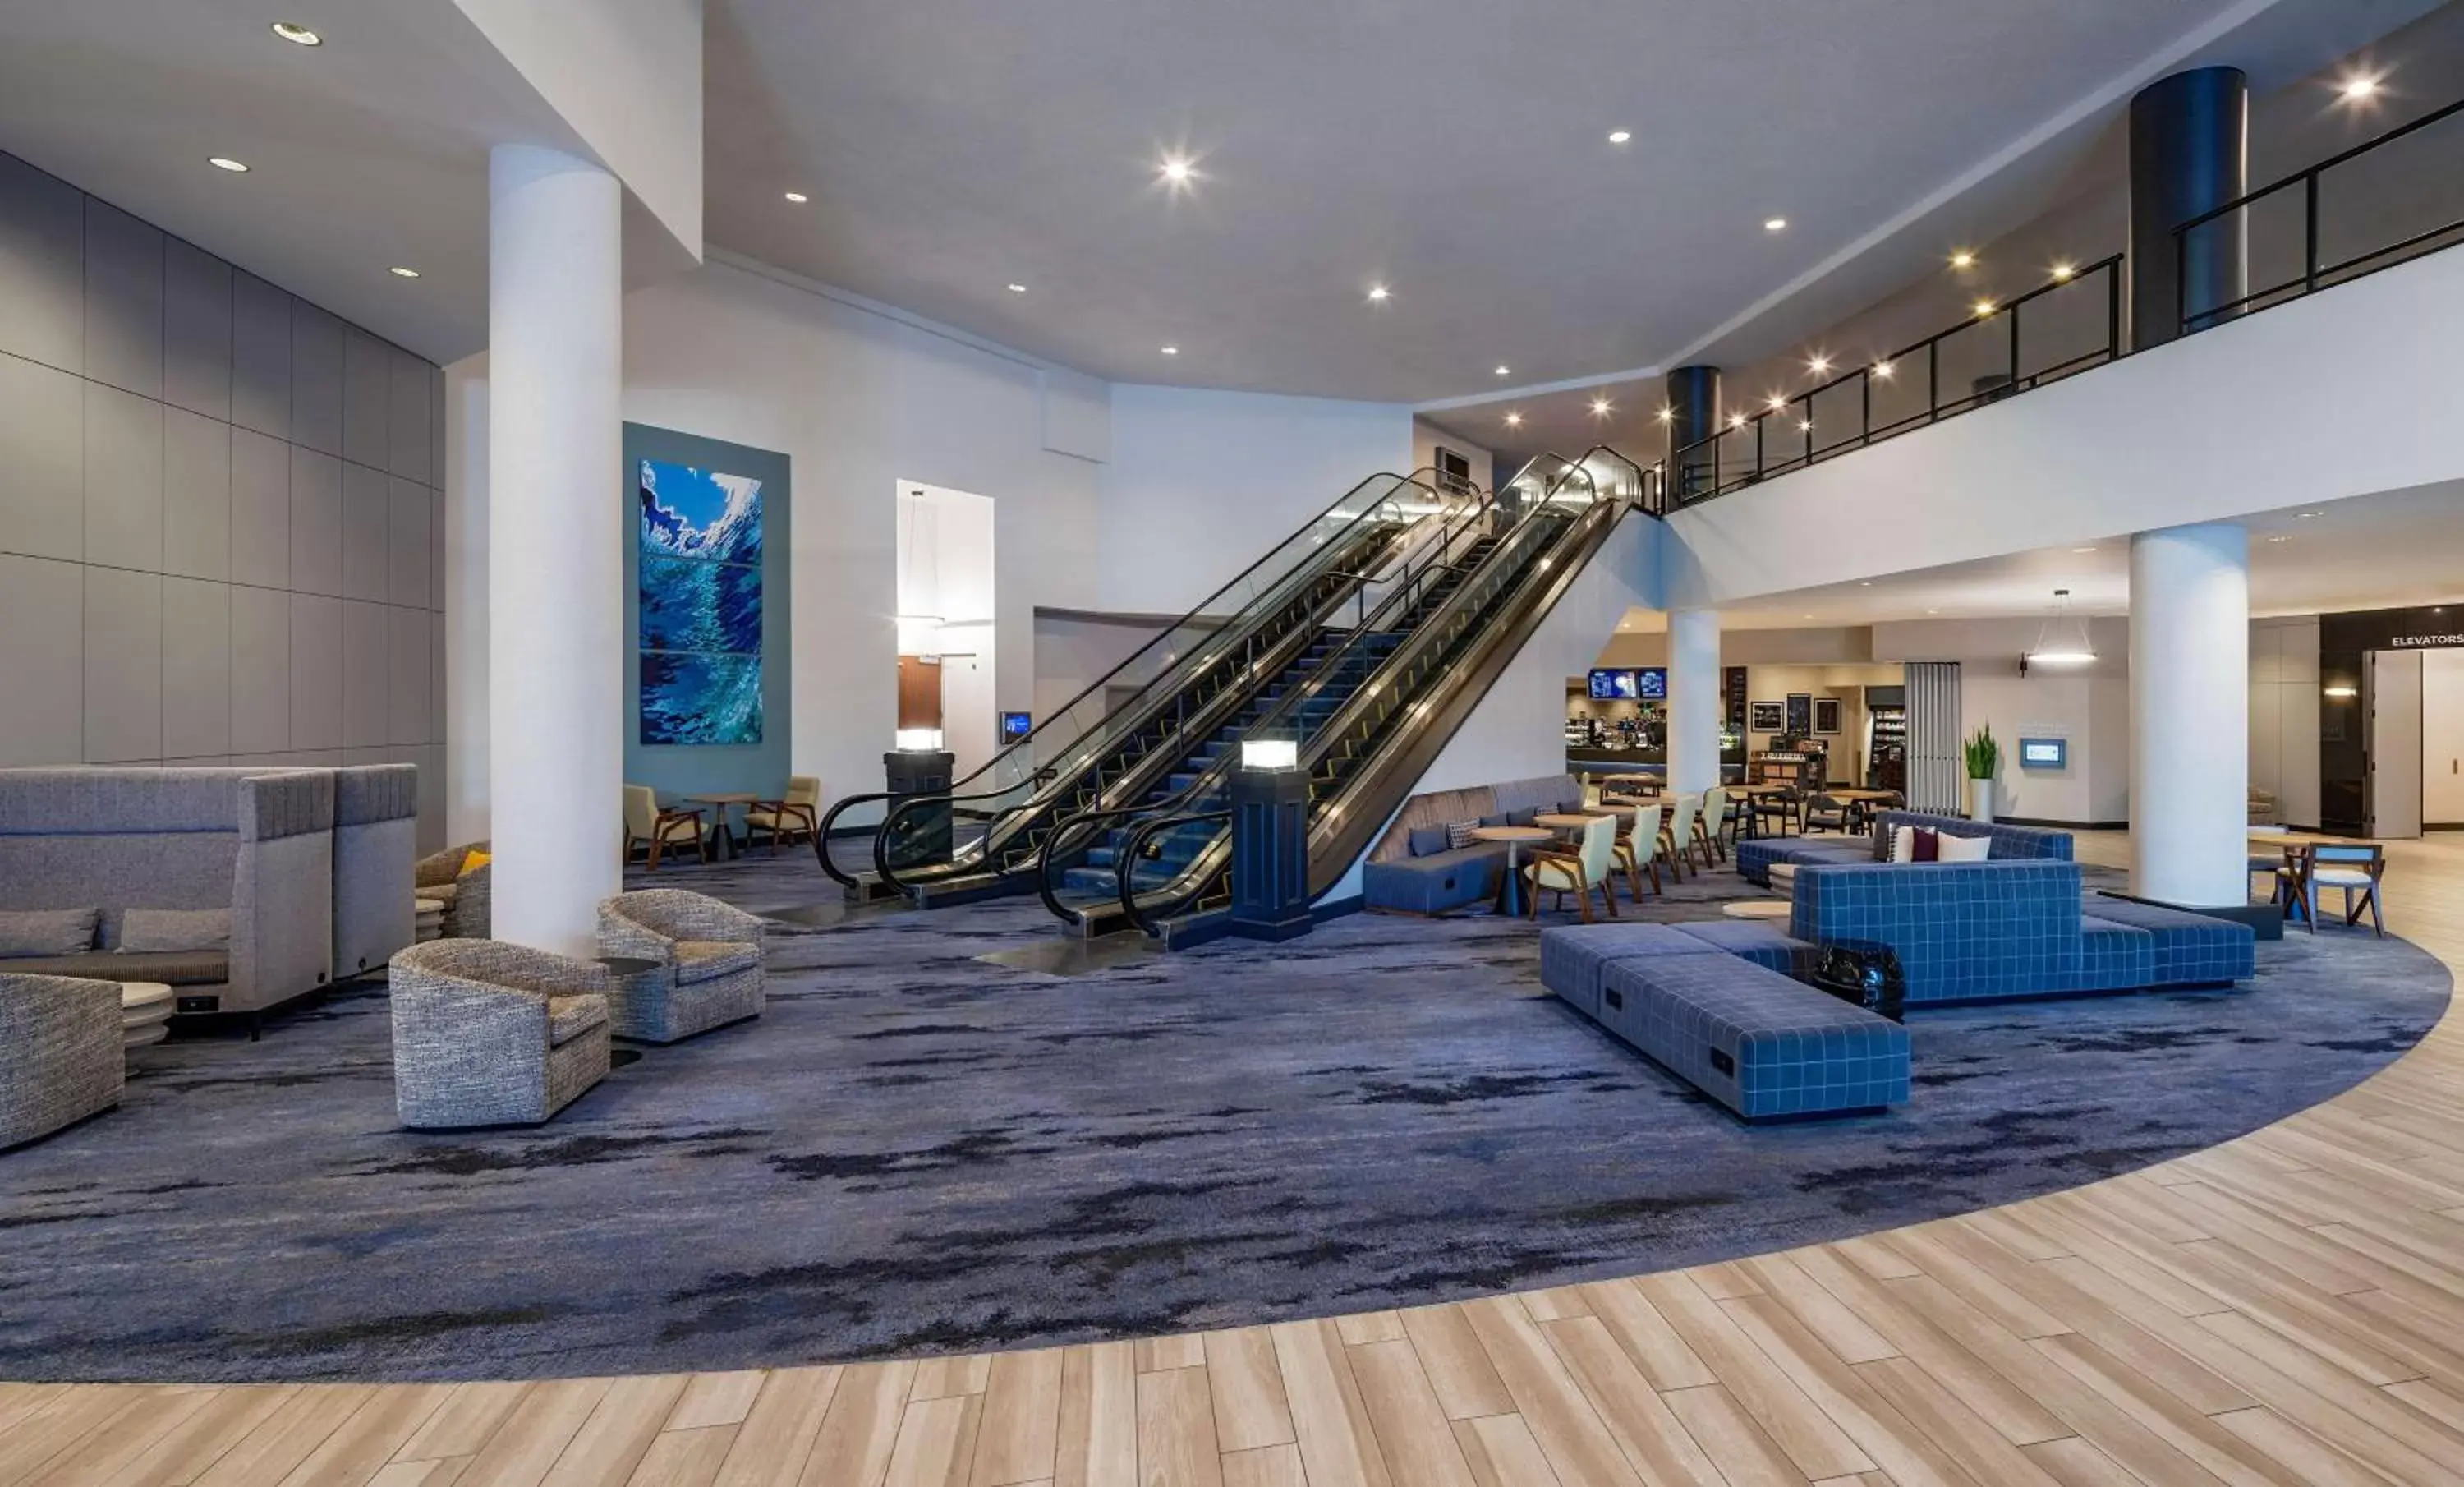 Lobby or reception, Fitness Center/Facilities in Hyatt Regency Santa Clara